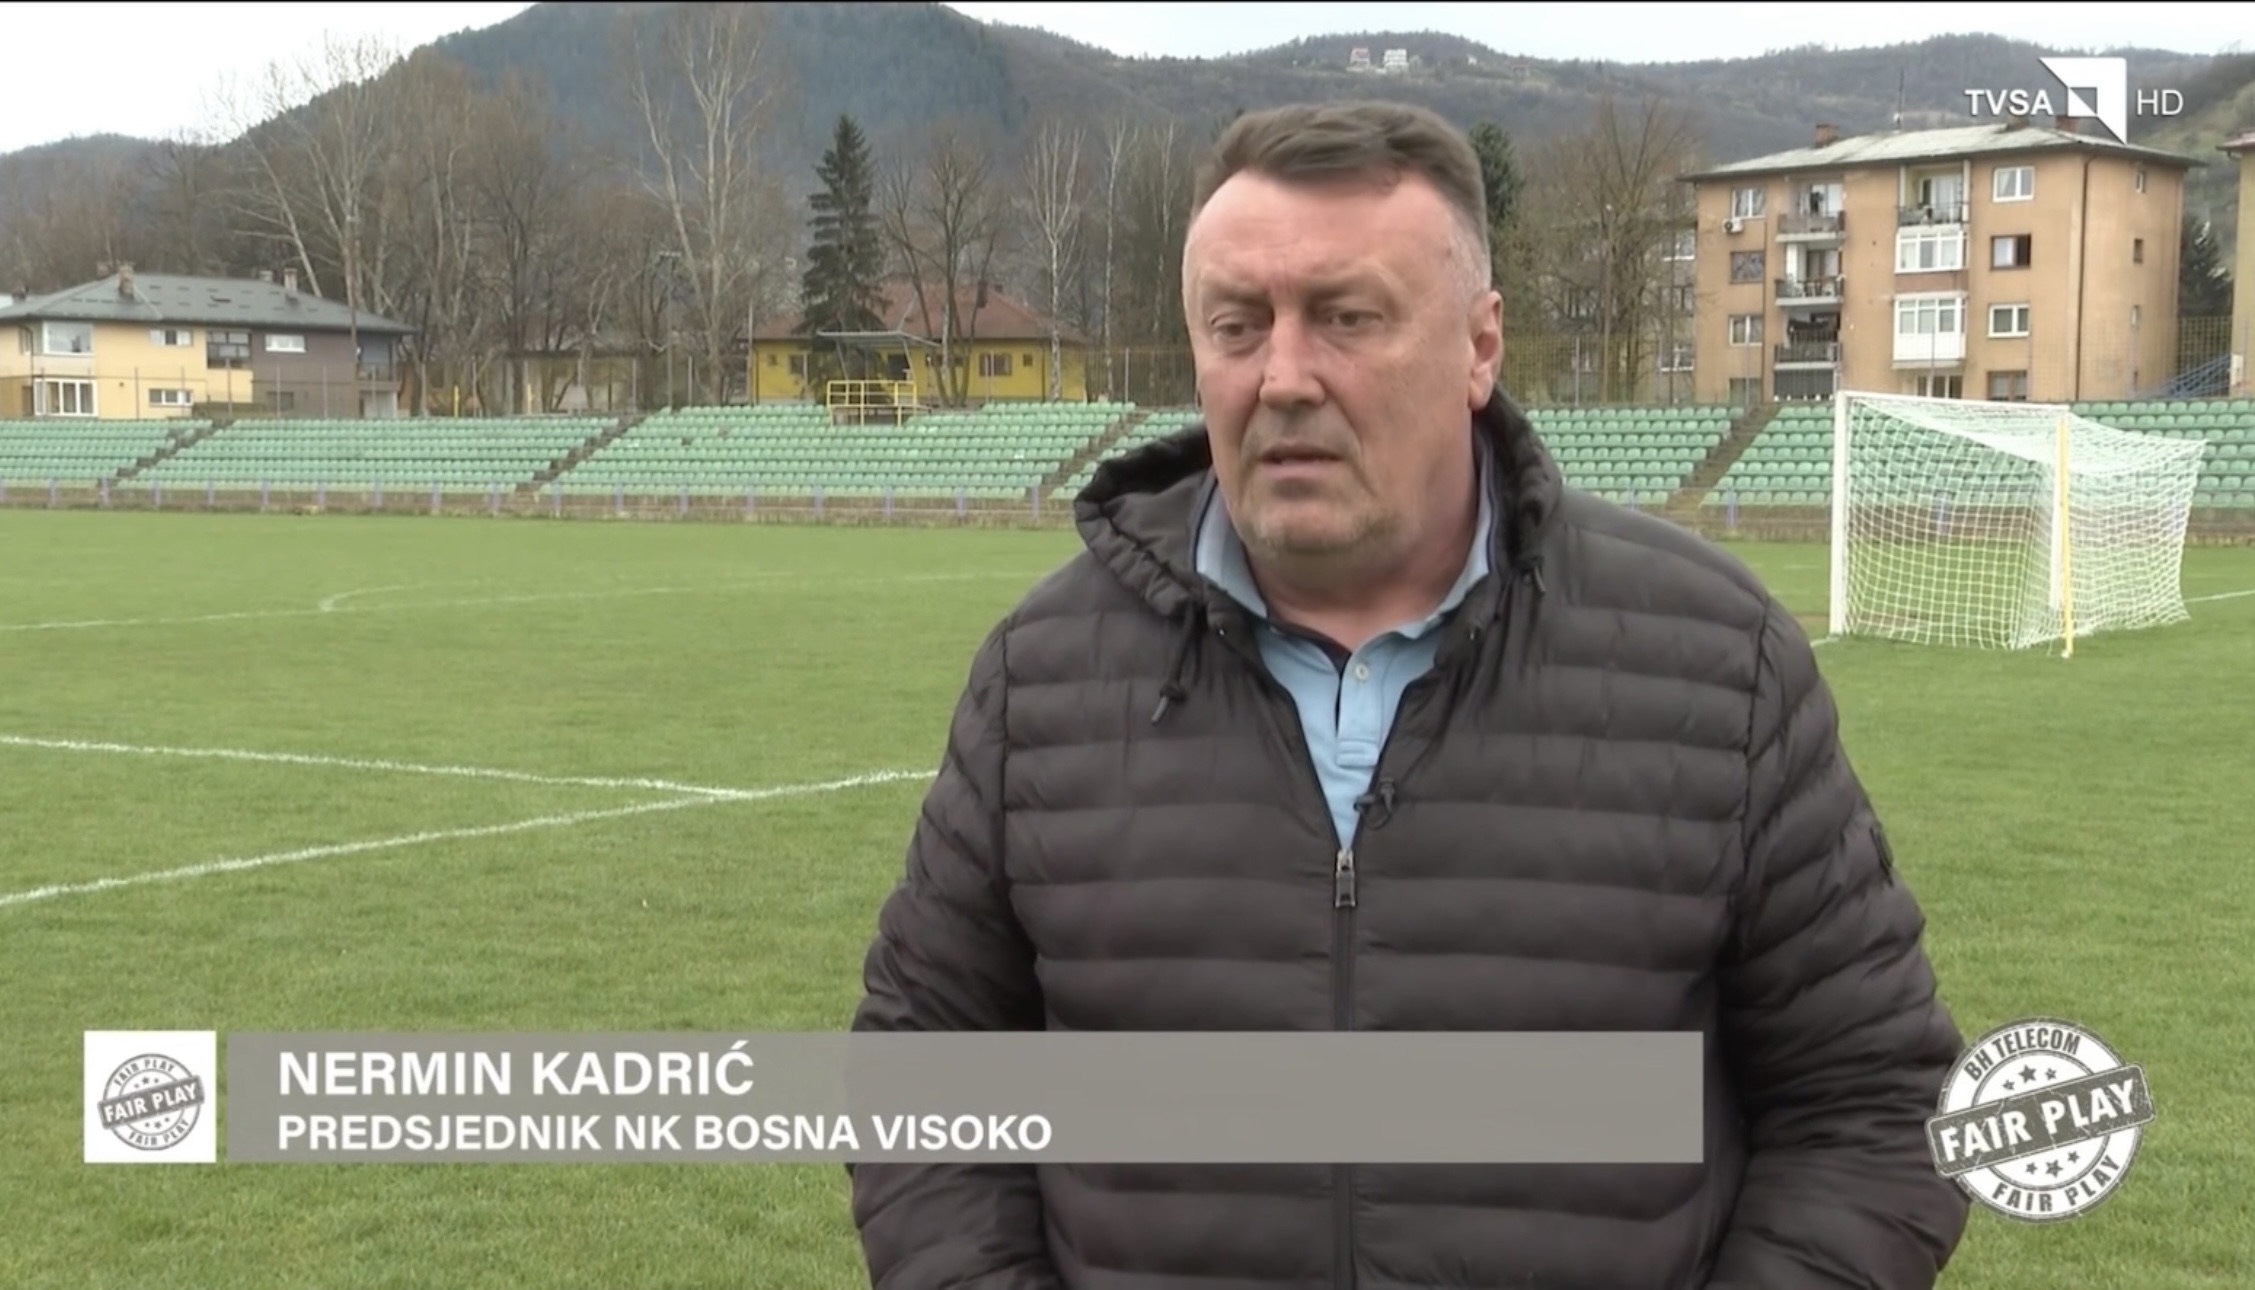 VIDEO / TVSA na stadionu Luke u razgovoru sa Nerminom Kadrićem i Omerom Joldićem